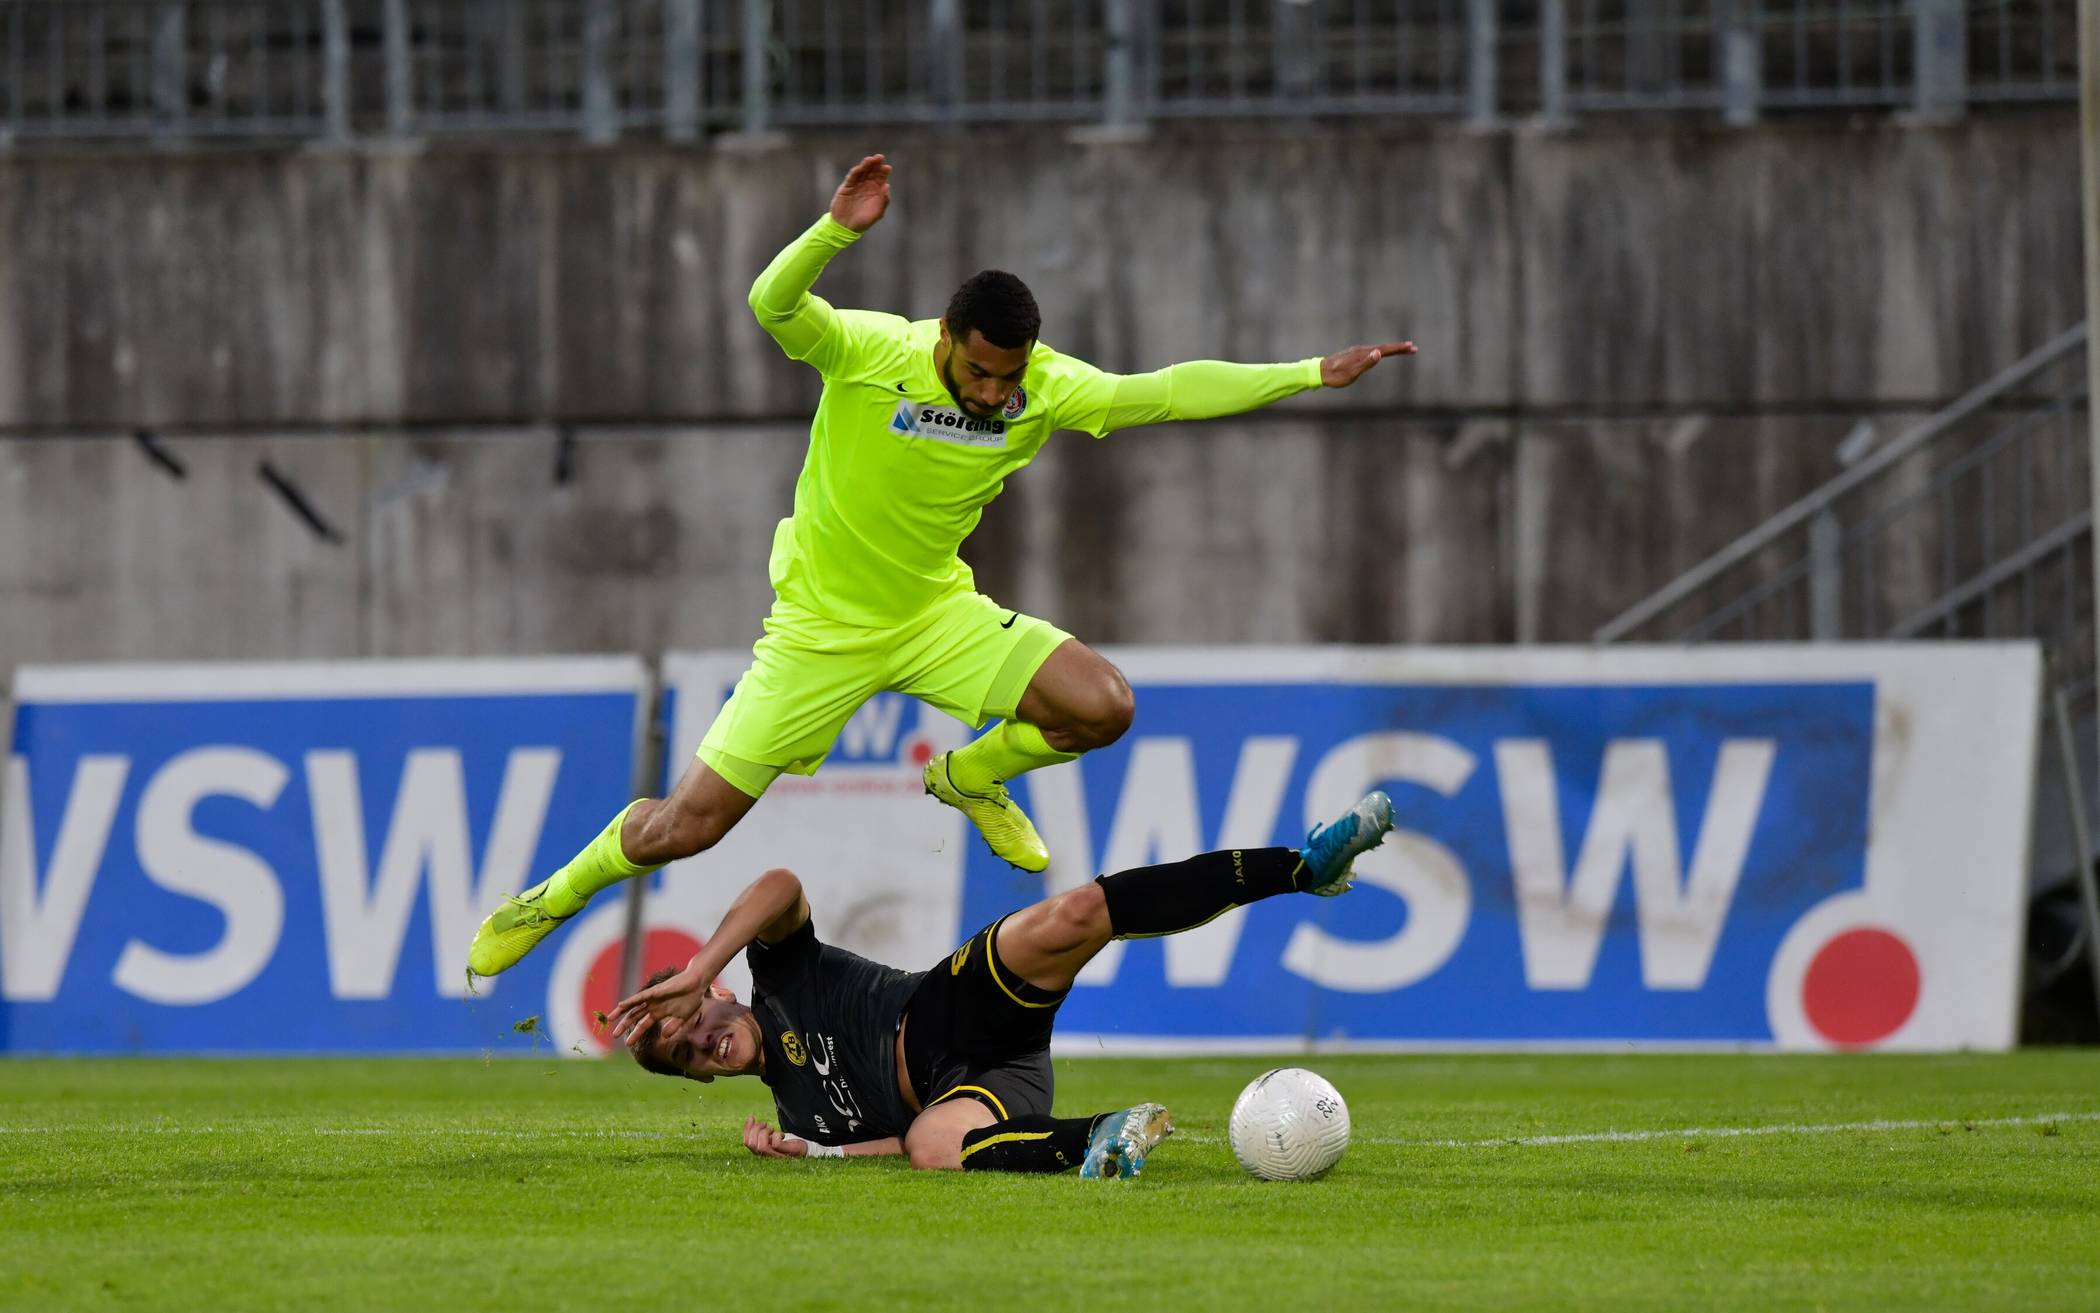  Im Viertelfinale bezwang der WSV (hier Noah Salau) in neongelben Trikots den VfB Homberg mit 3:1 und sprang in die nächste Runde. 